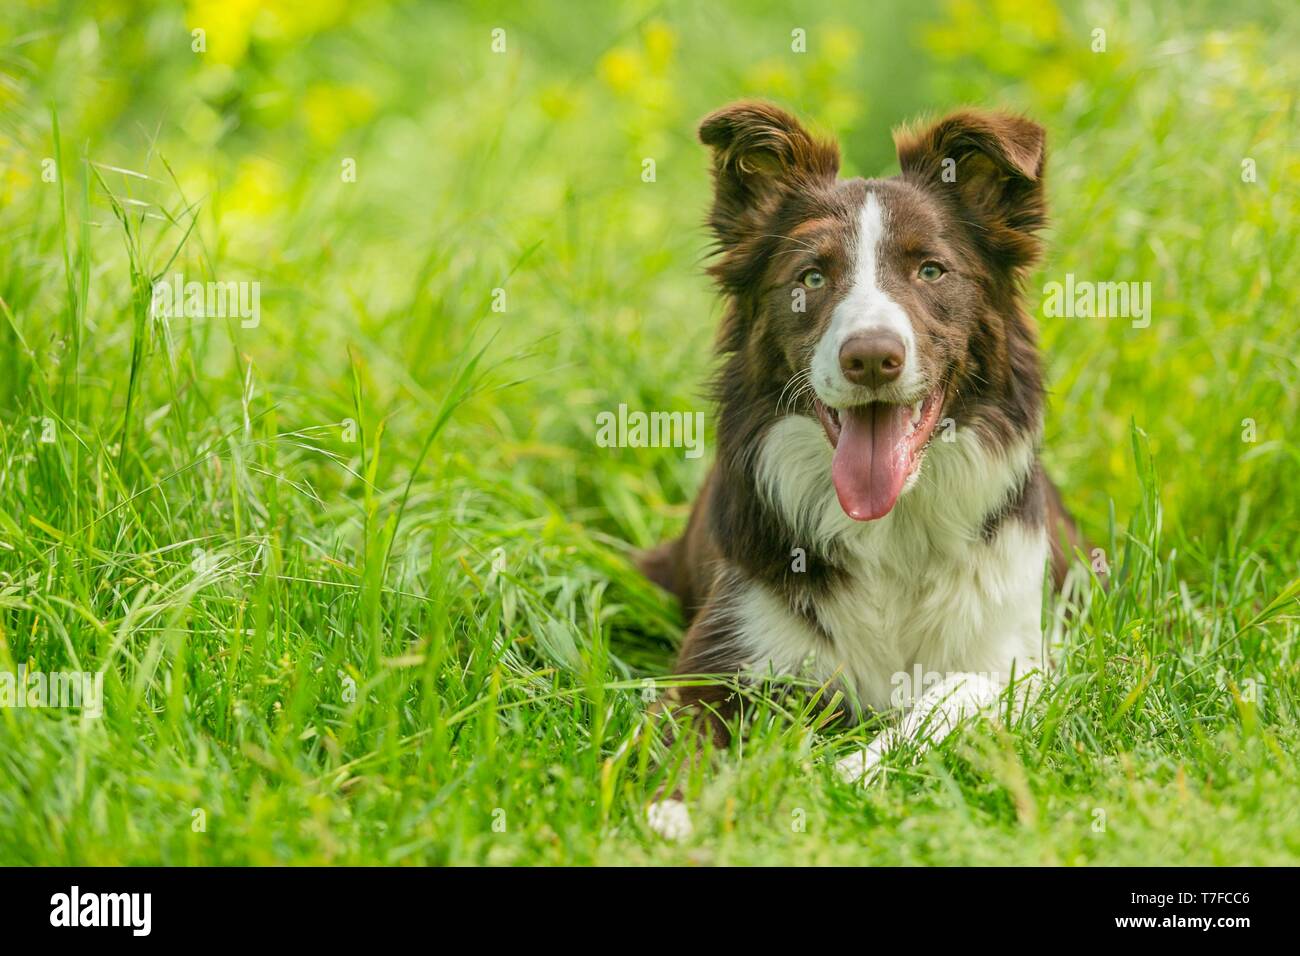 Gerne braunen und weißen Border Collie Hund mit Zunge heraus haften liegend im Gras mit gelben Blüten. Tag Sommer auf einer Wiese. Stockfoto